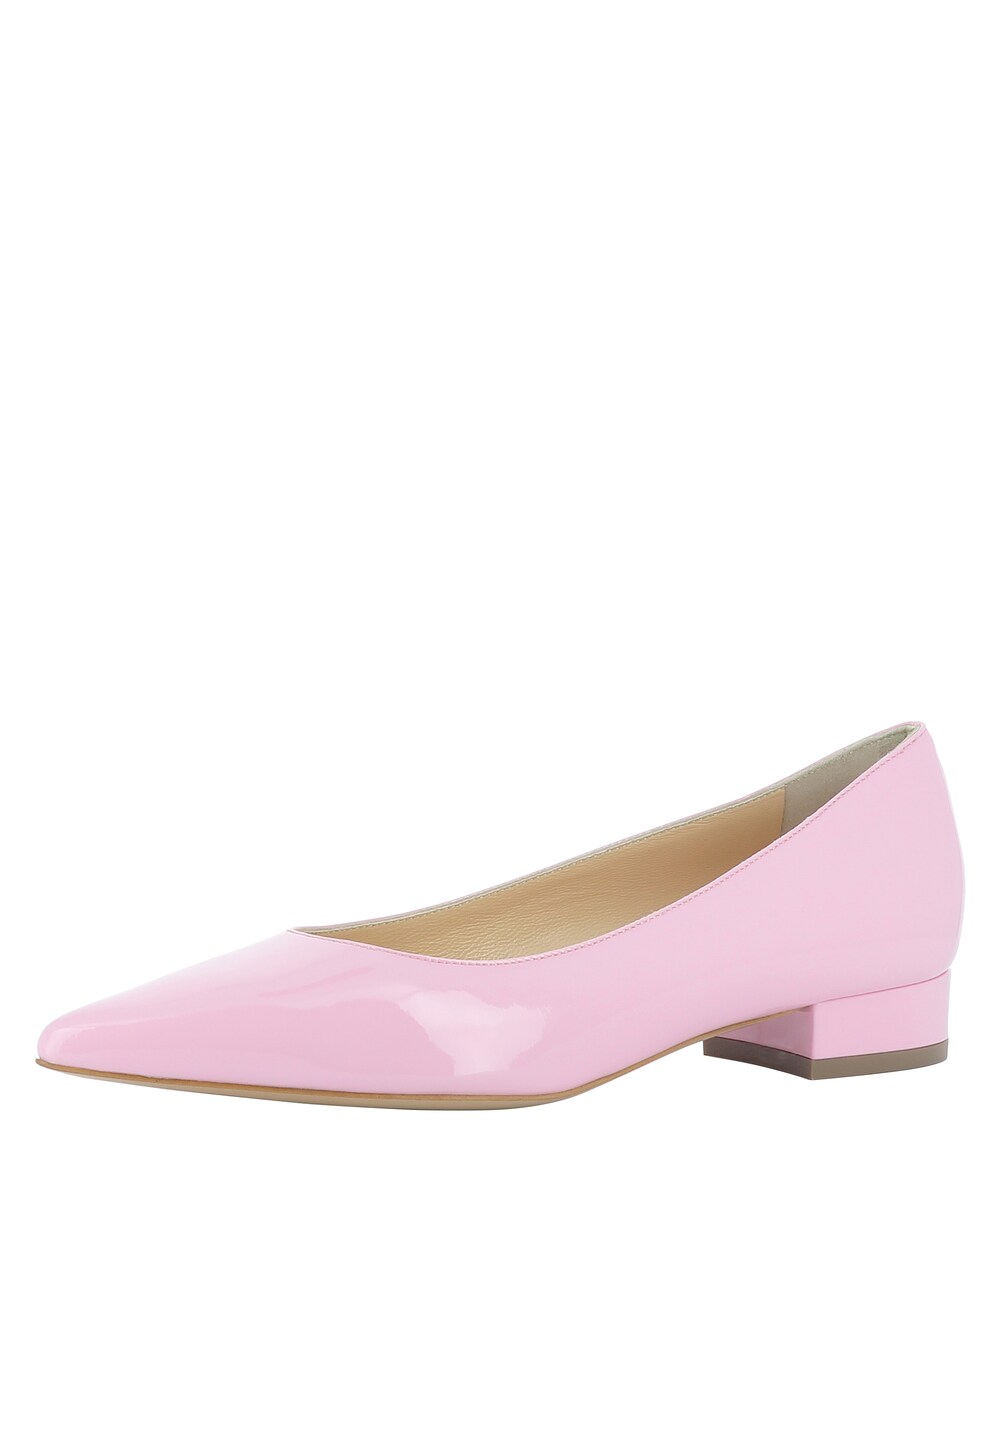 Высокие туфли Evita FRANCA, розовый